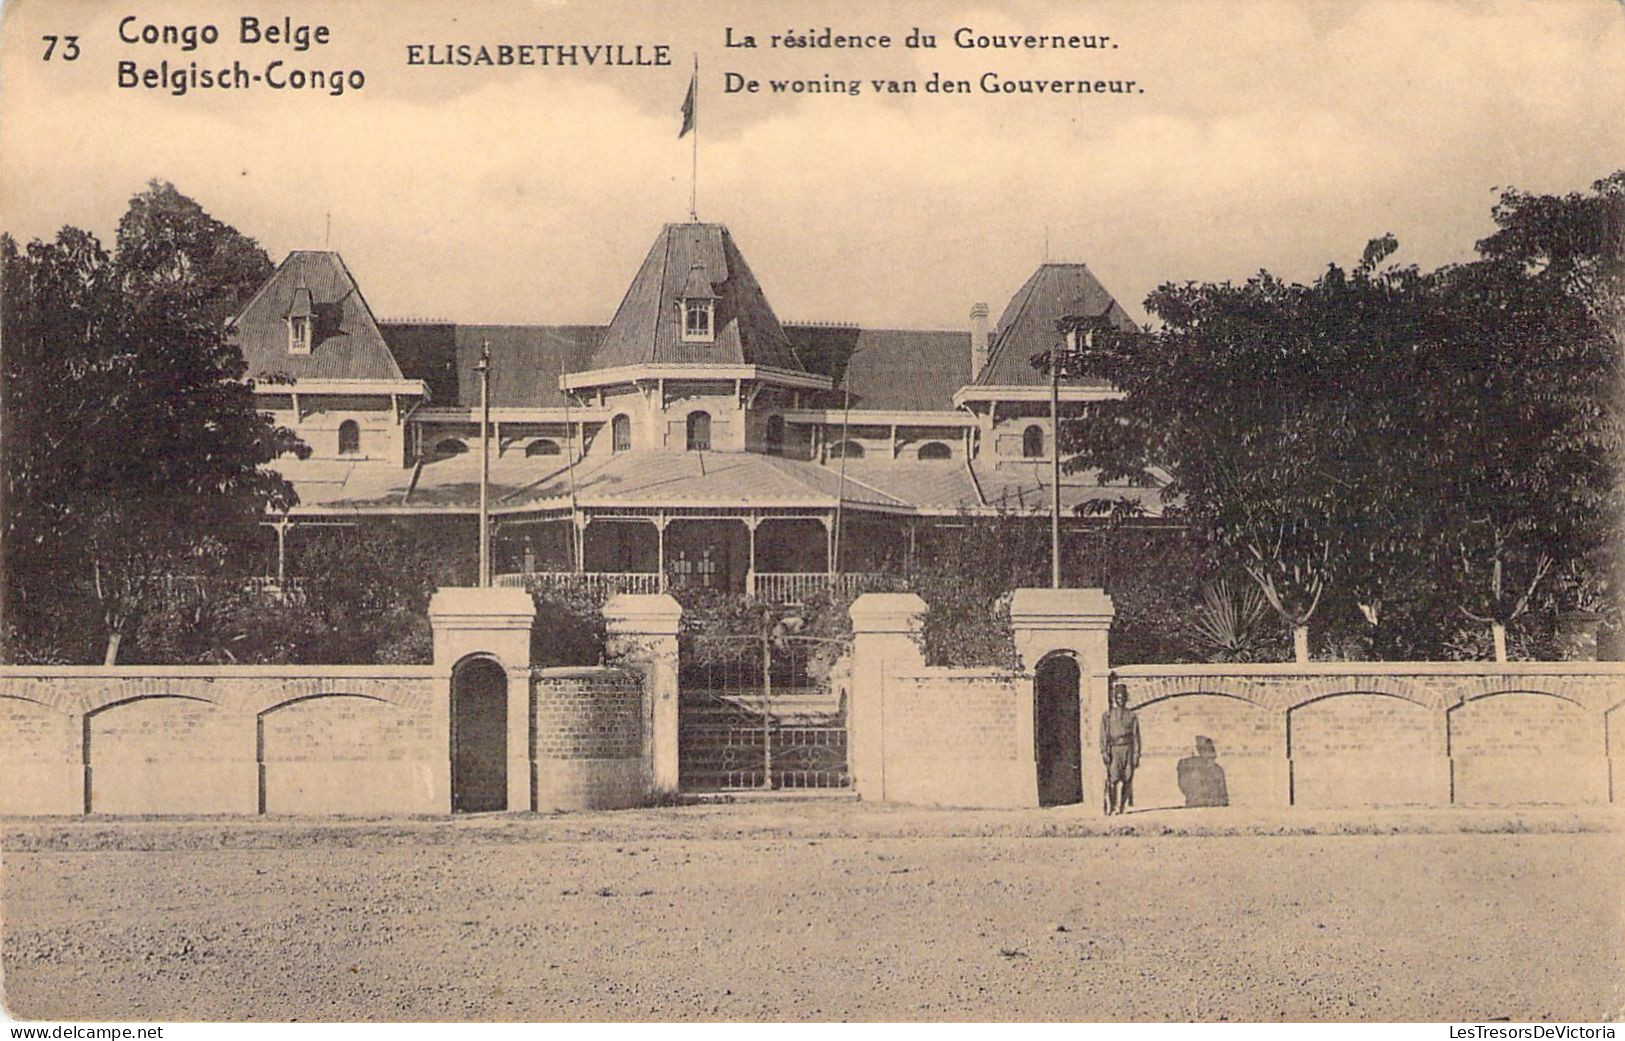 CONGO BELGE - Elisabethville - La Résidence Du Gouverneur - Carte Postale Ancienne - Belgian Congo